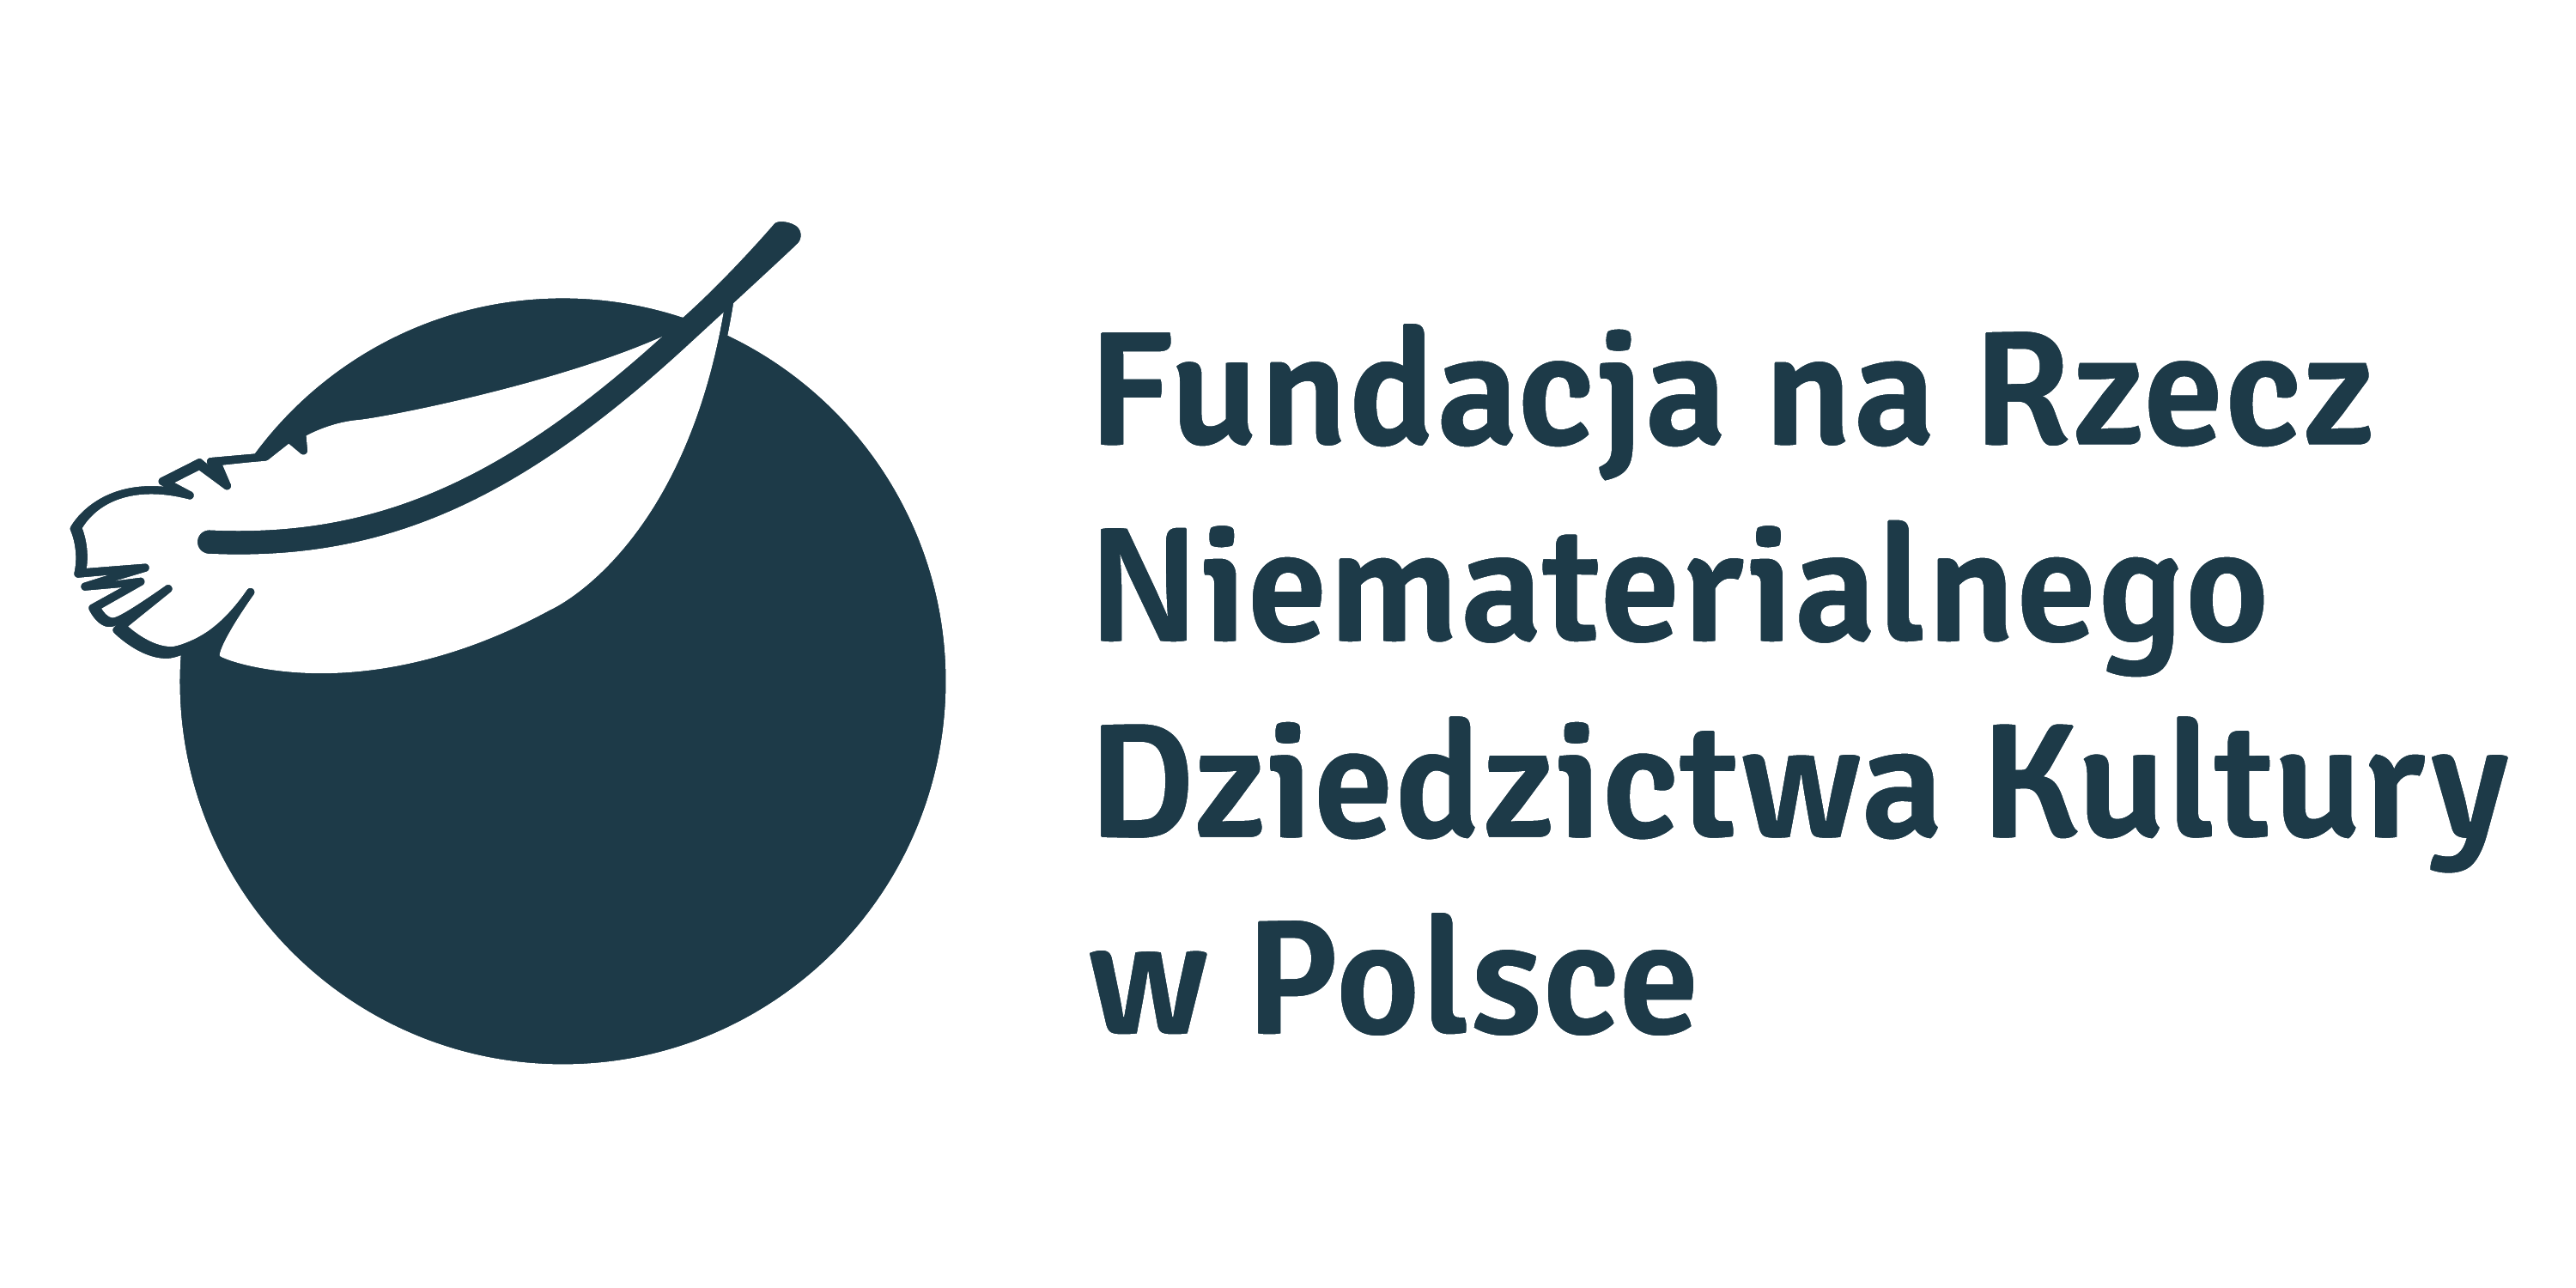 Fundacja na Rzecz Niematerialnego Dziedzictwa Kultury w Polsce